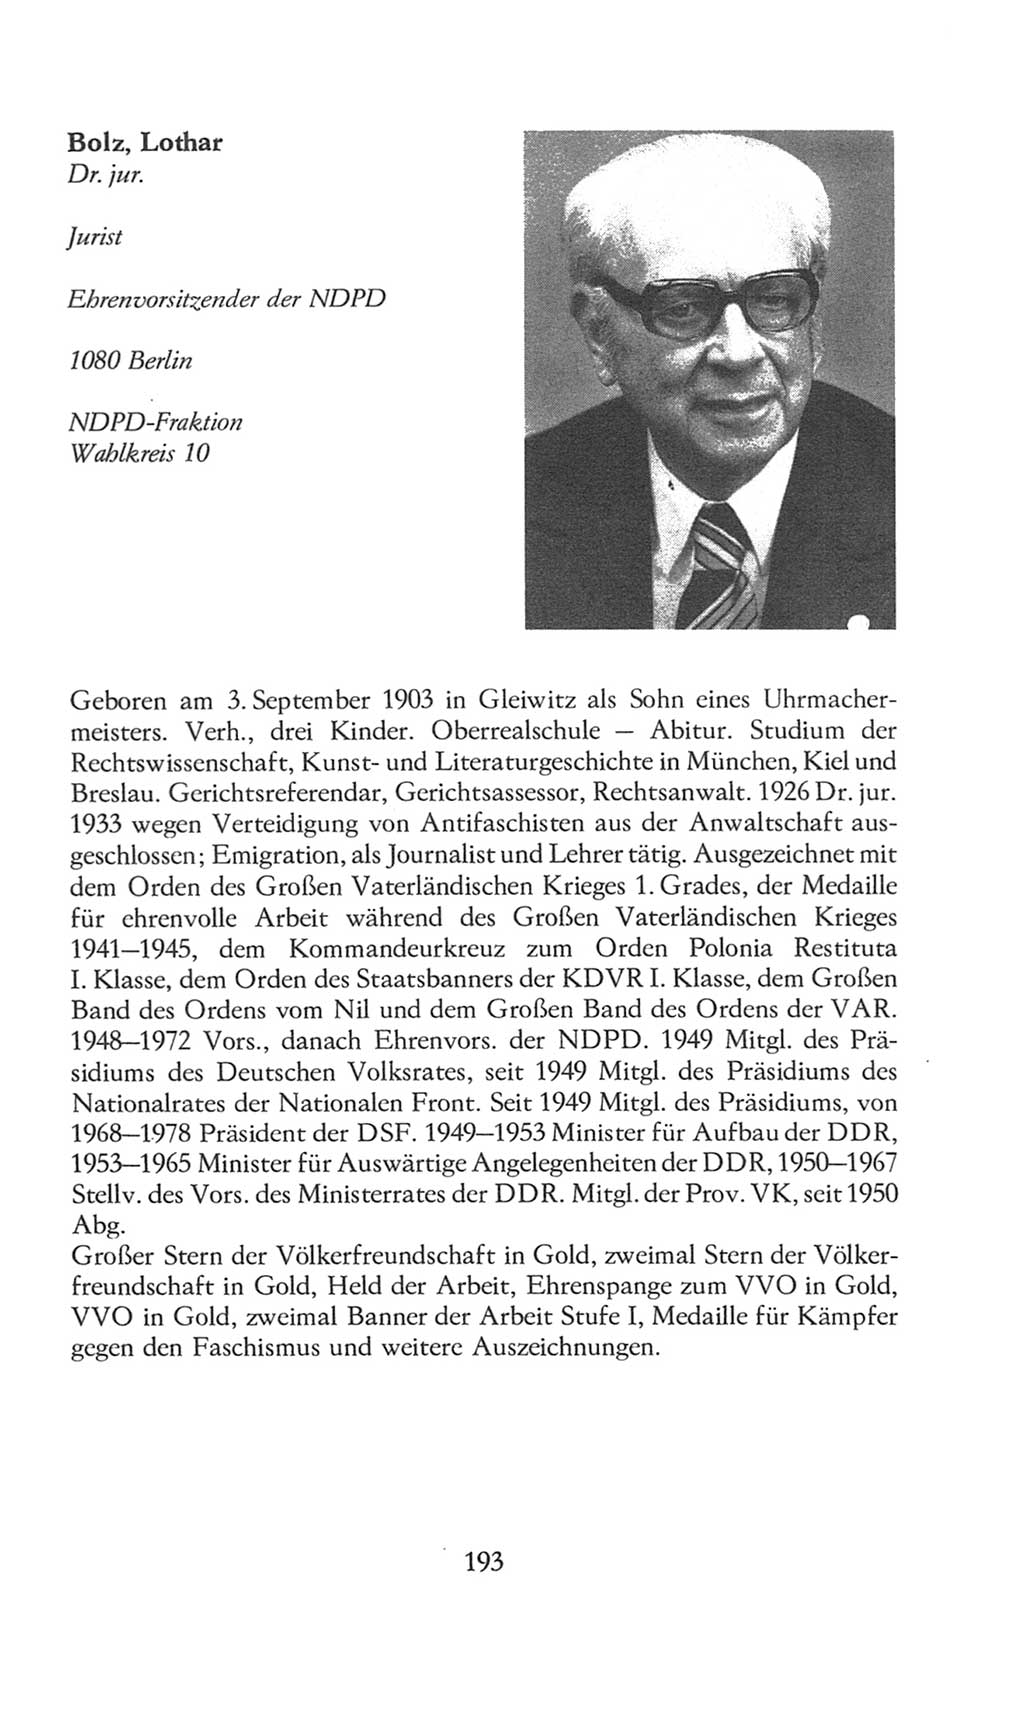 Volkskammer (VK) der Deutschen Demokratischen Republik (DDR), 8. Wahlperiode 1981-1986, Seite 193 (VK. DDR 8. WP. 1981-1986, S. 193)